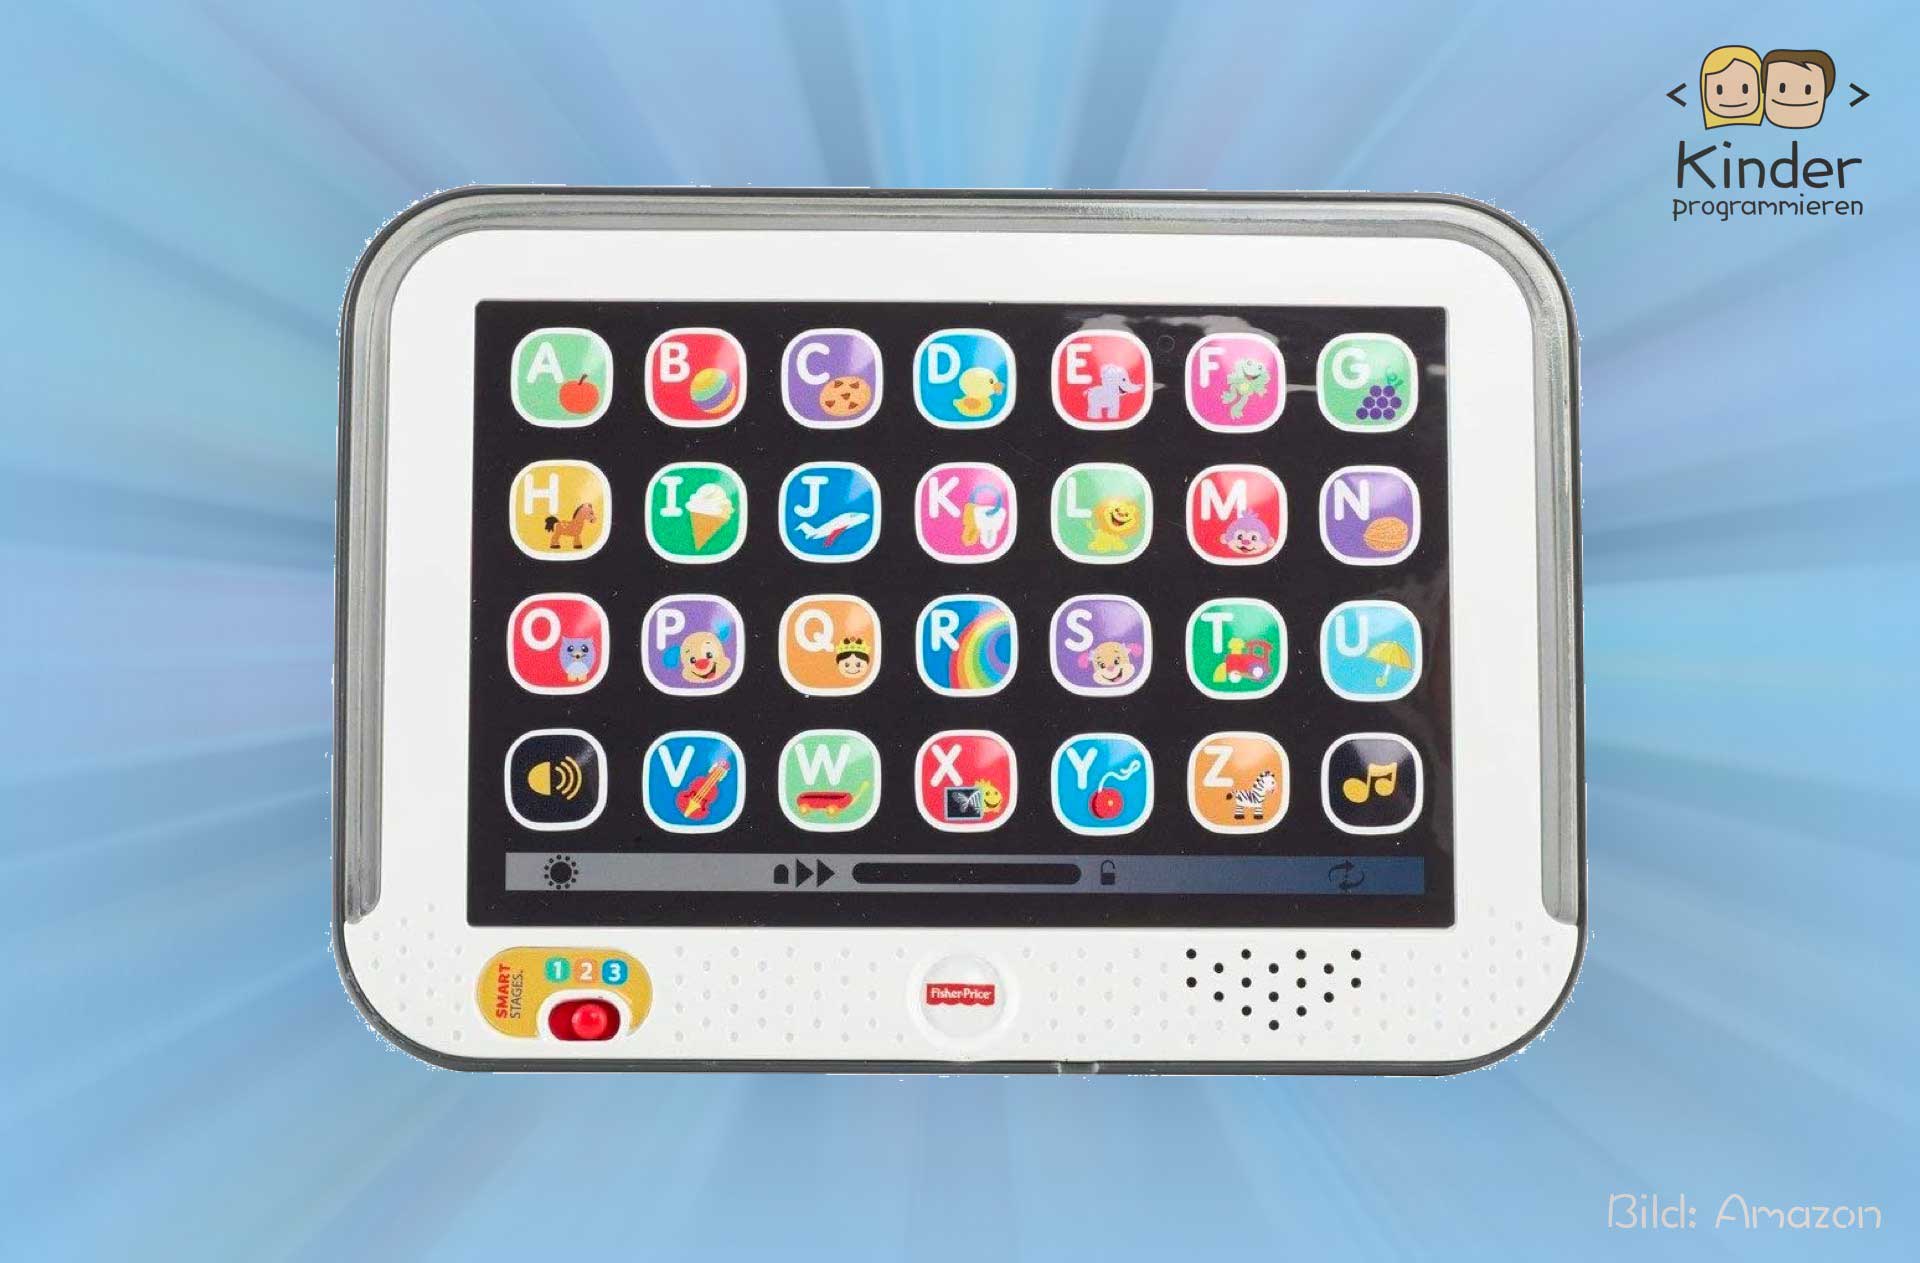 Fisher-Price CDG57  Lernen & Spaß Tablet Kindertablet Lernspielzeug Kinder PC 